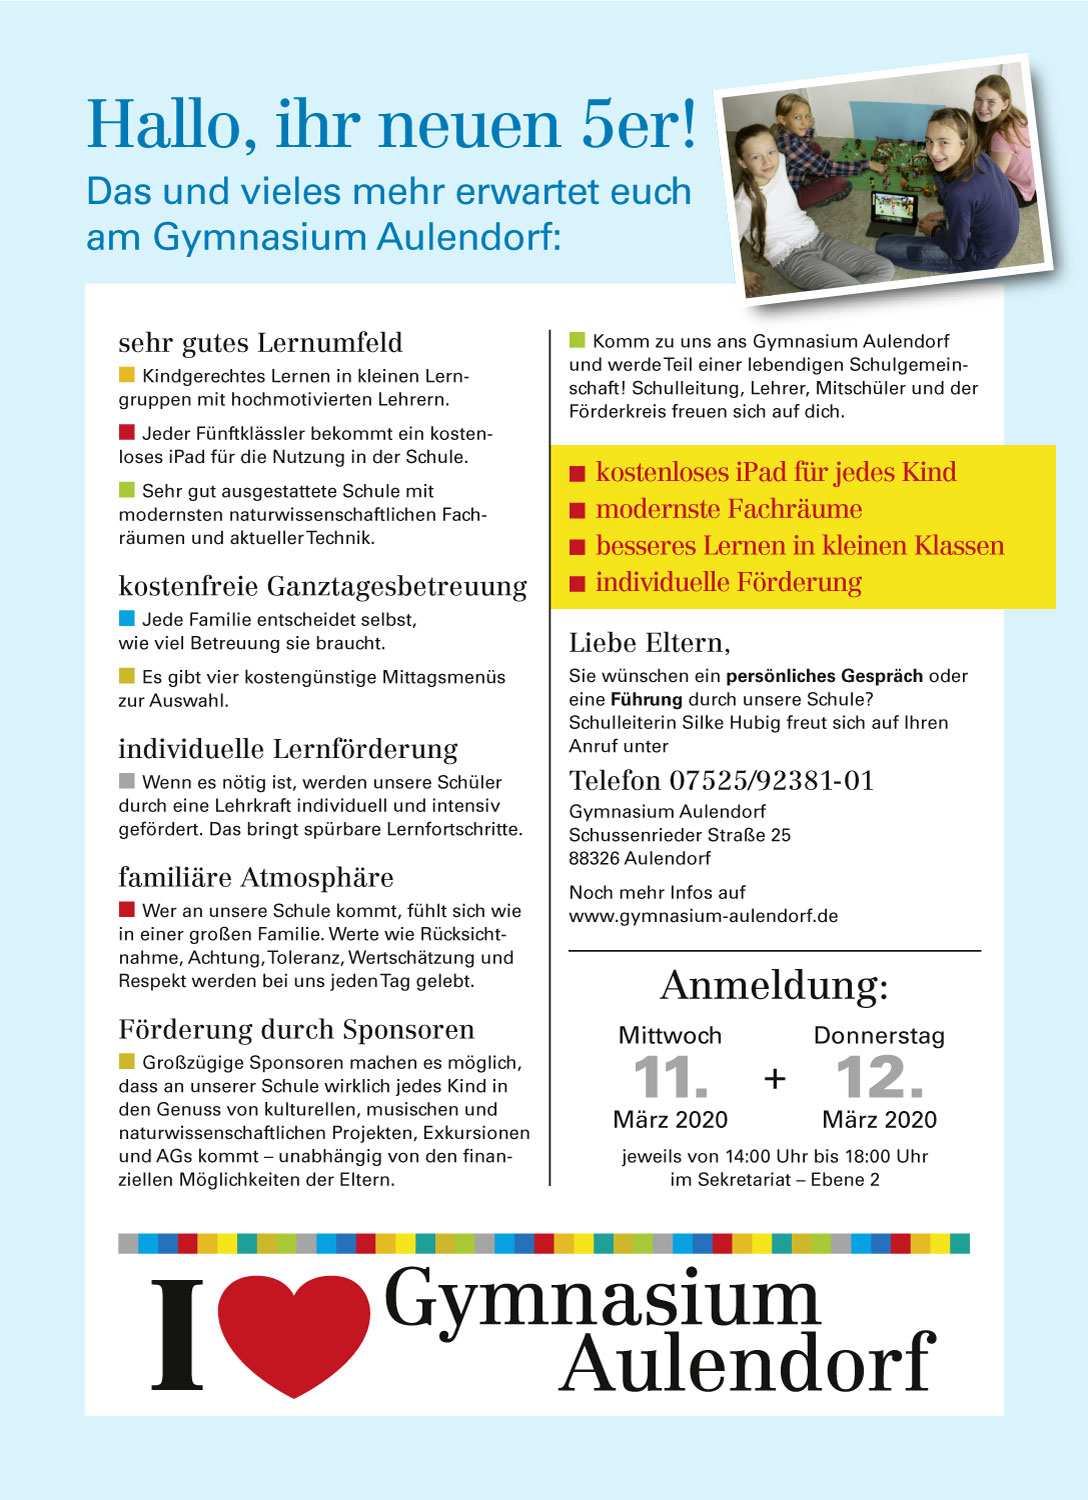 Flyer zur Schulanmeldung am Gymnasium Aulendorf am 11. und 12. März 2020